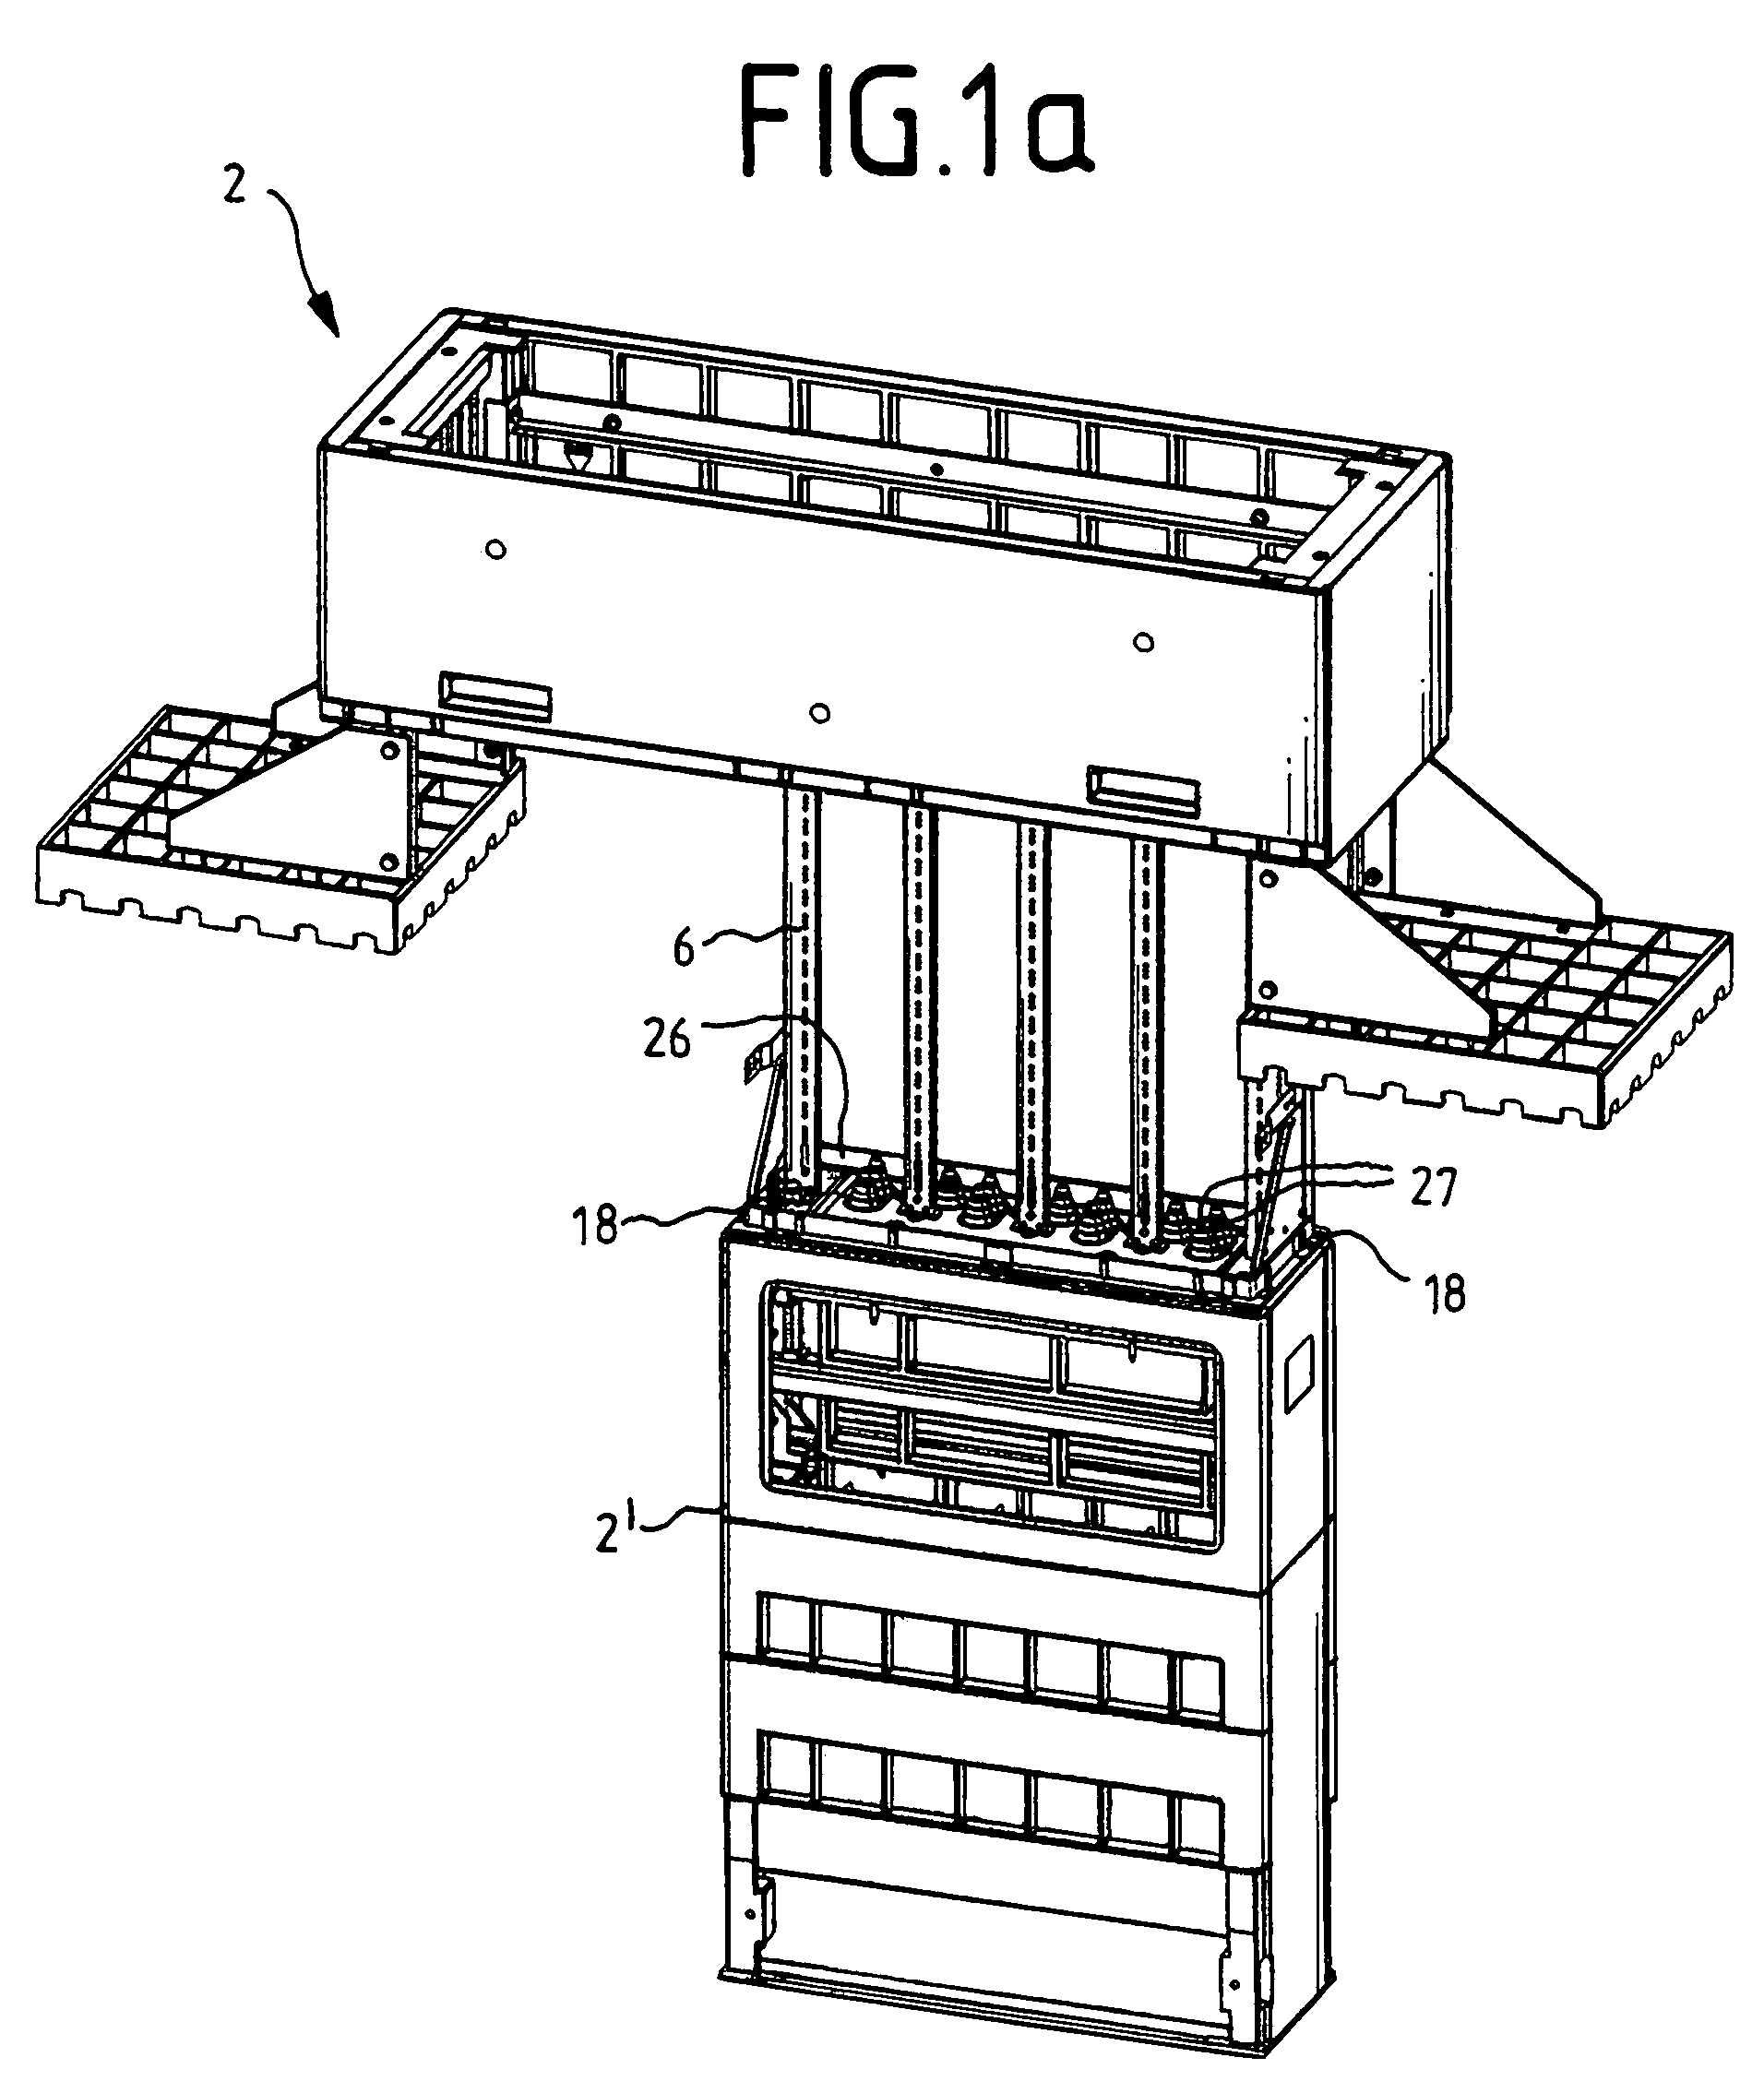 Slip-over distribution cabinet